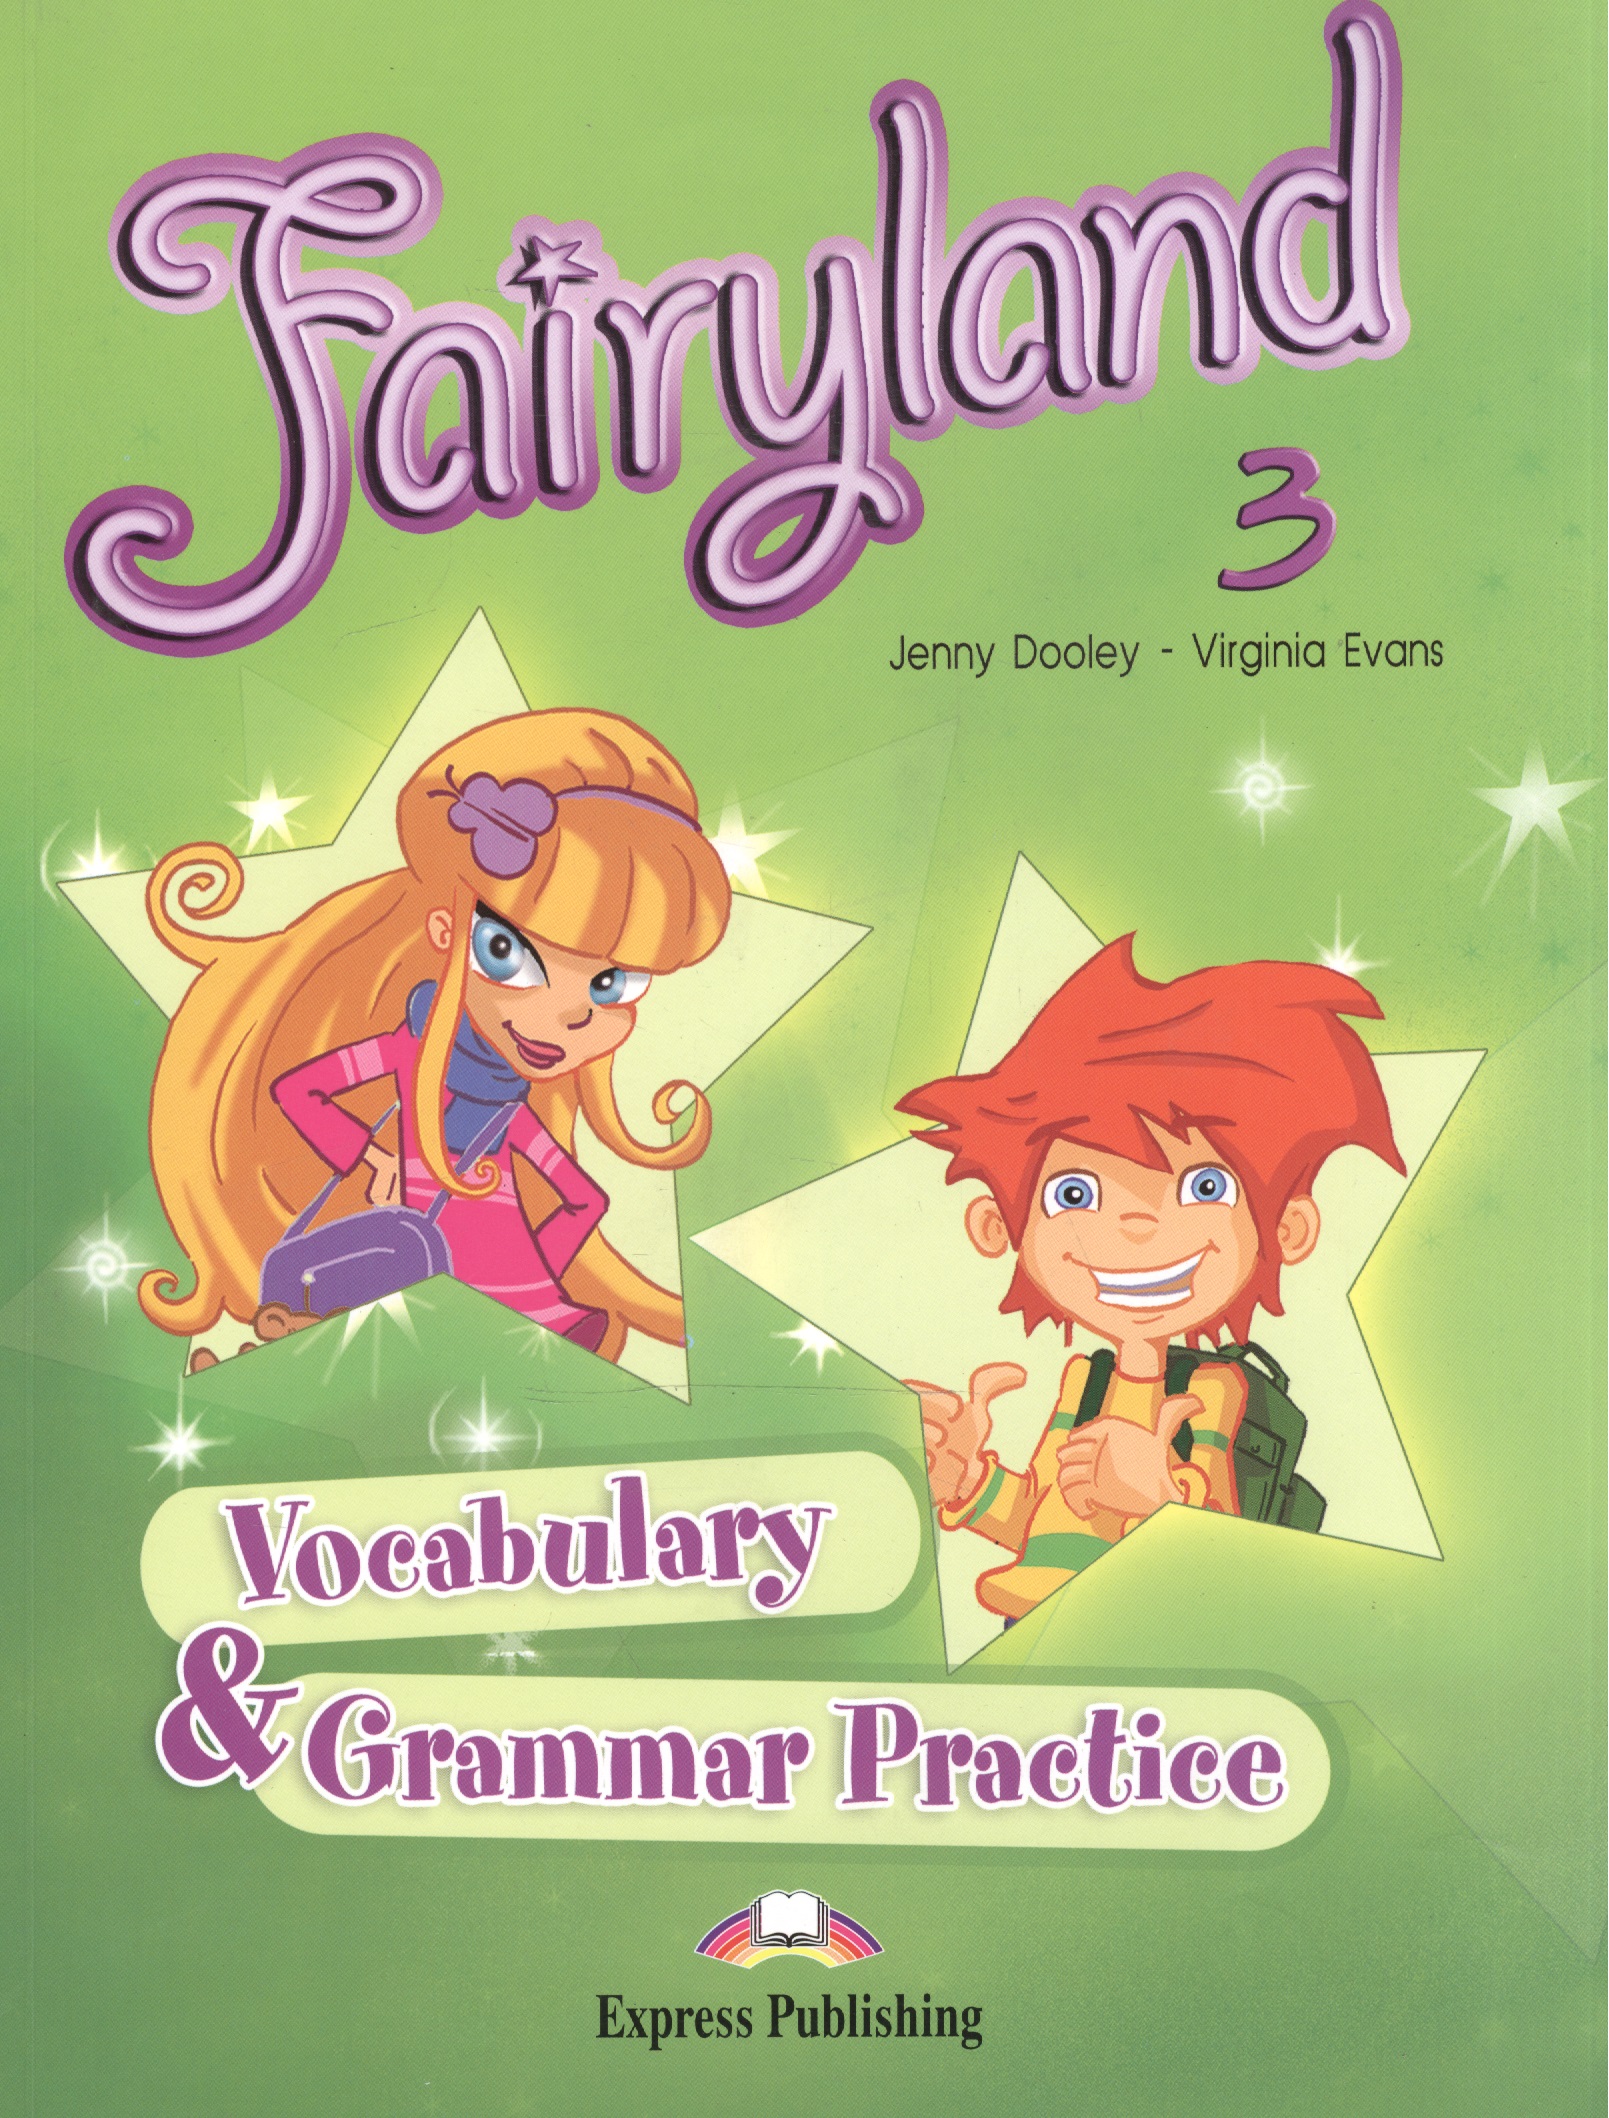 Fairyland 3. Vocabulary & Grammar Practice. Beginner. Сборник лексических и граммат. упражнений.